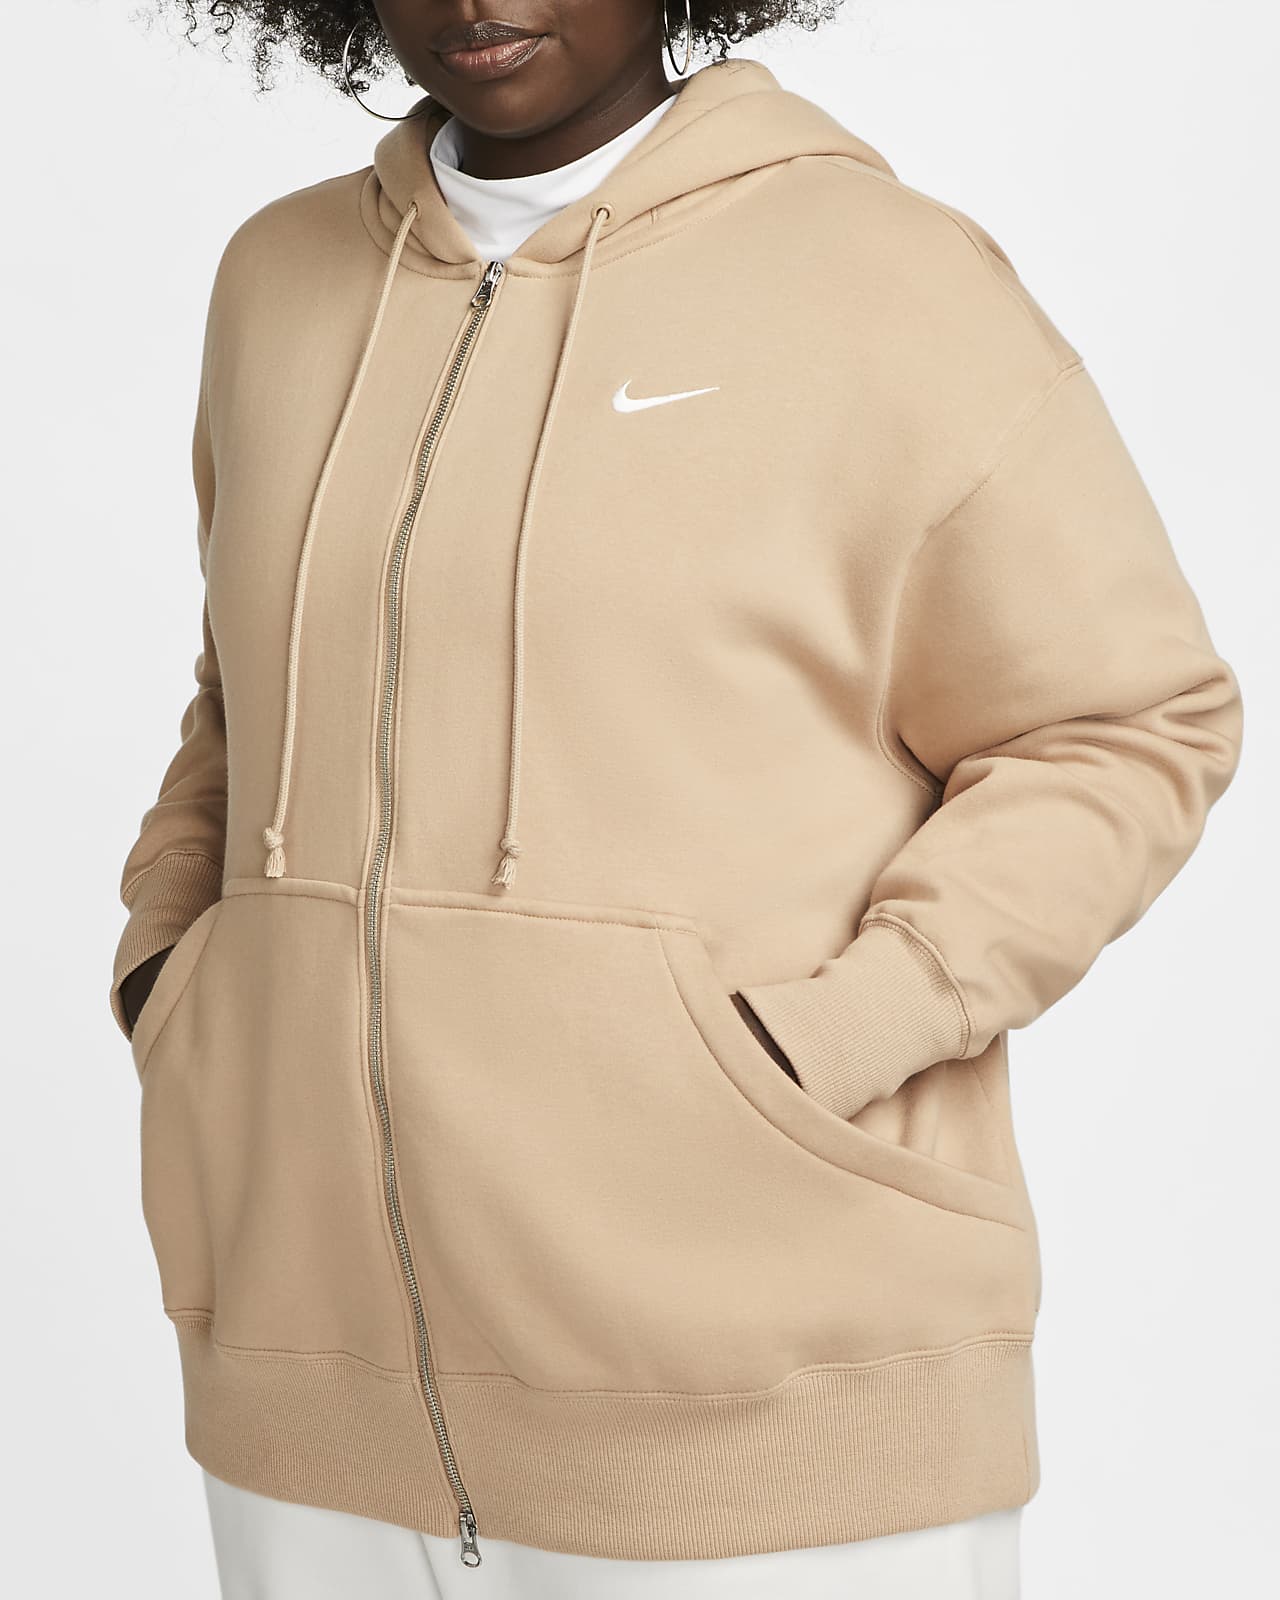 Nike Sportswear Fleece con capucha, cremallera completa y ajuste oversize (Talla grande) - ES